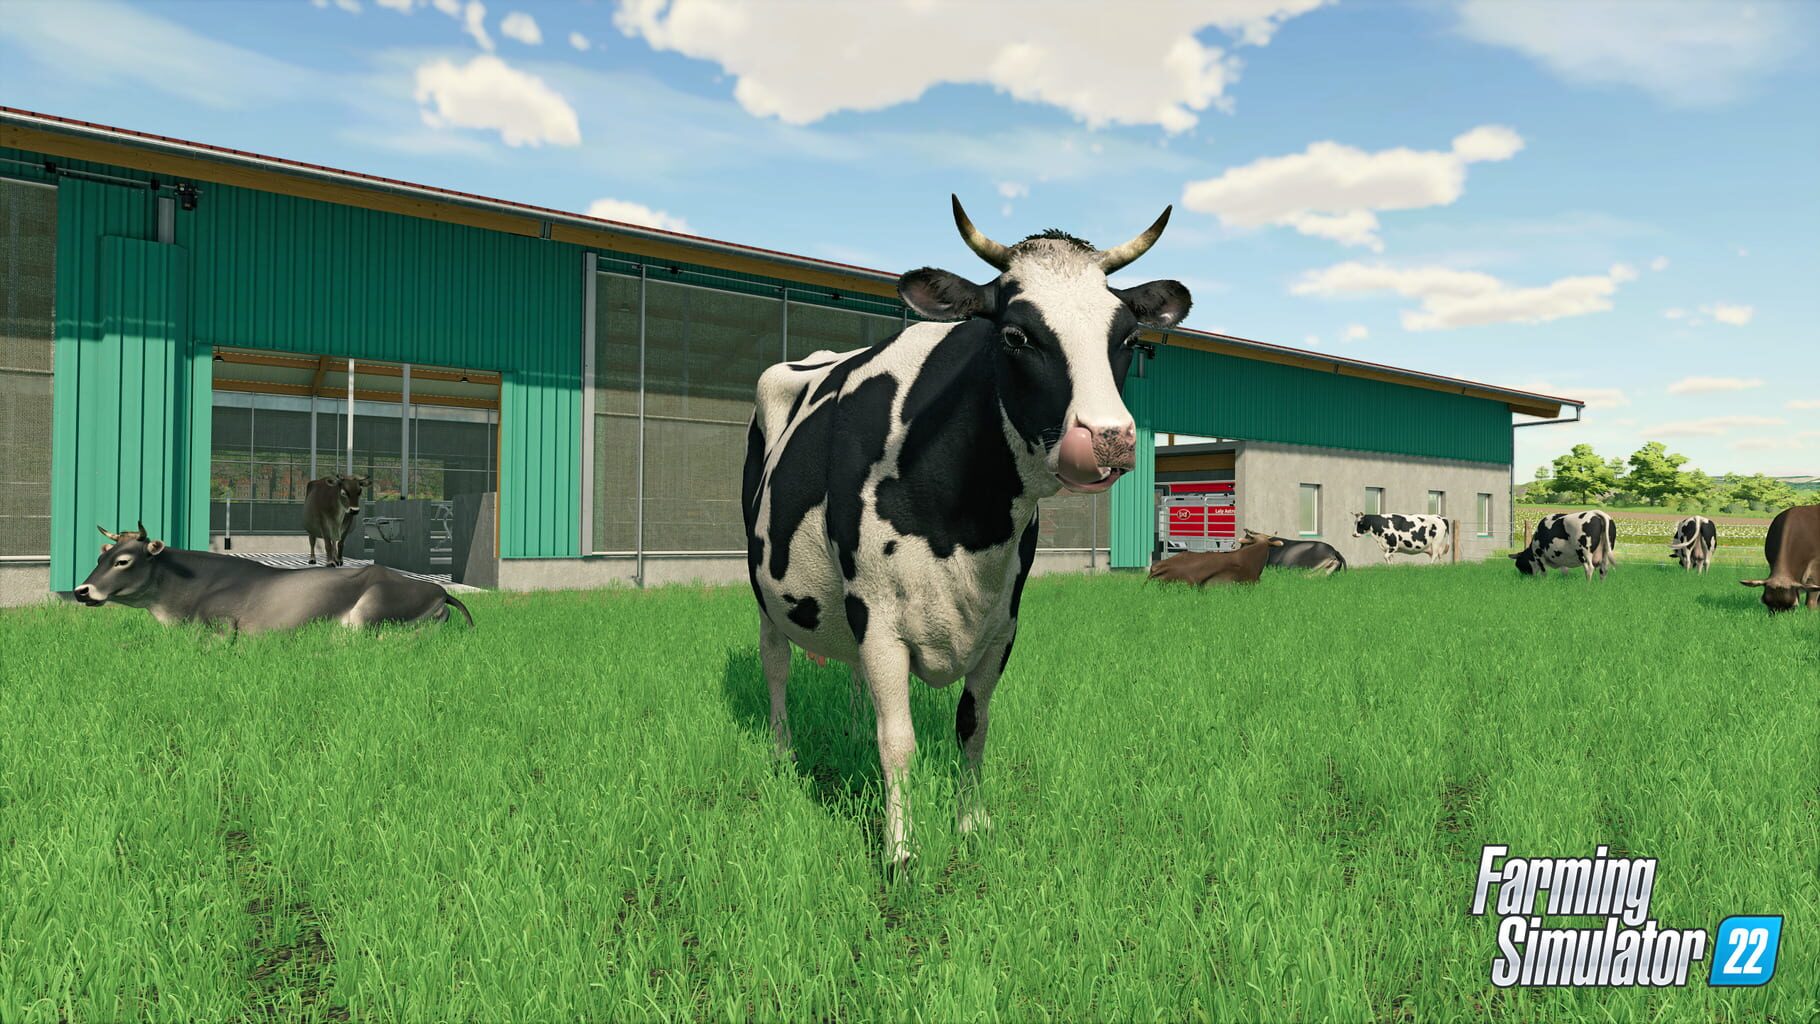 Farming Simulator 22 screenshots